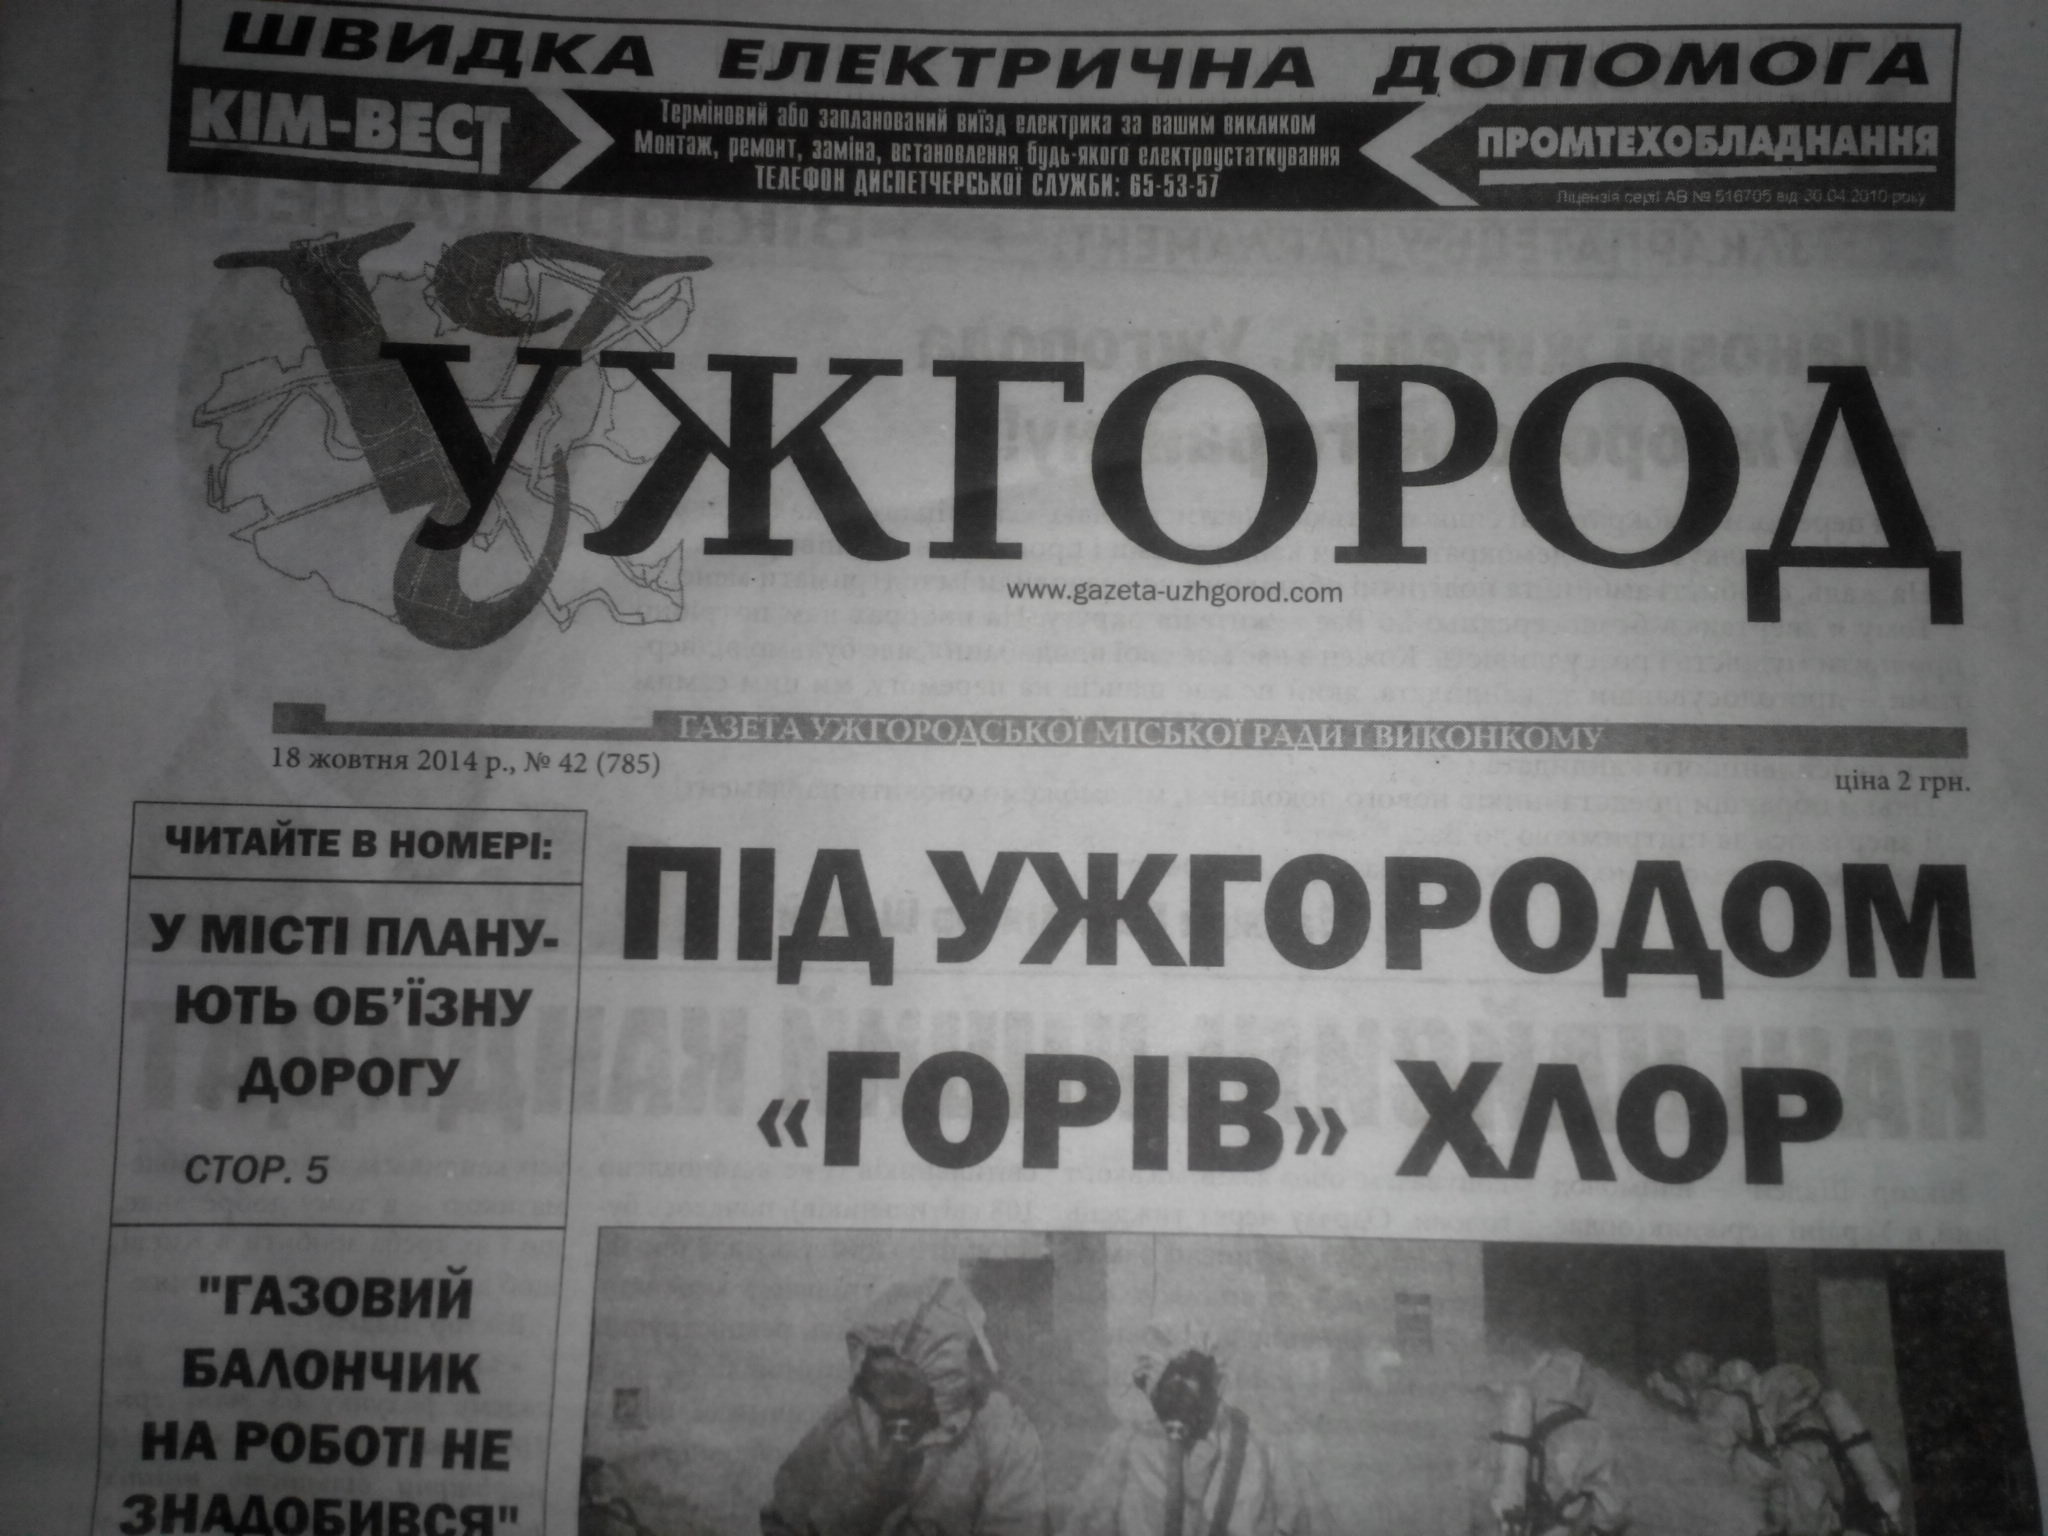 З початку року муніципальна газета "Ужгород" не друкується: депутати не виділили кошти і хочуть новий медіацентр